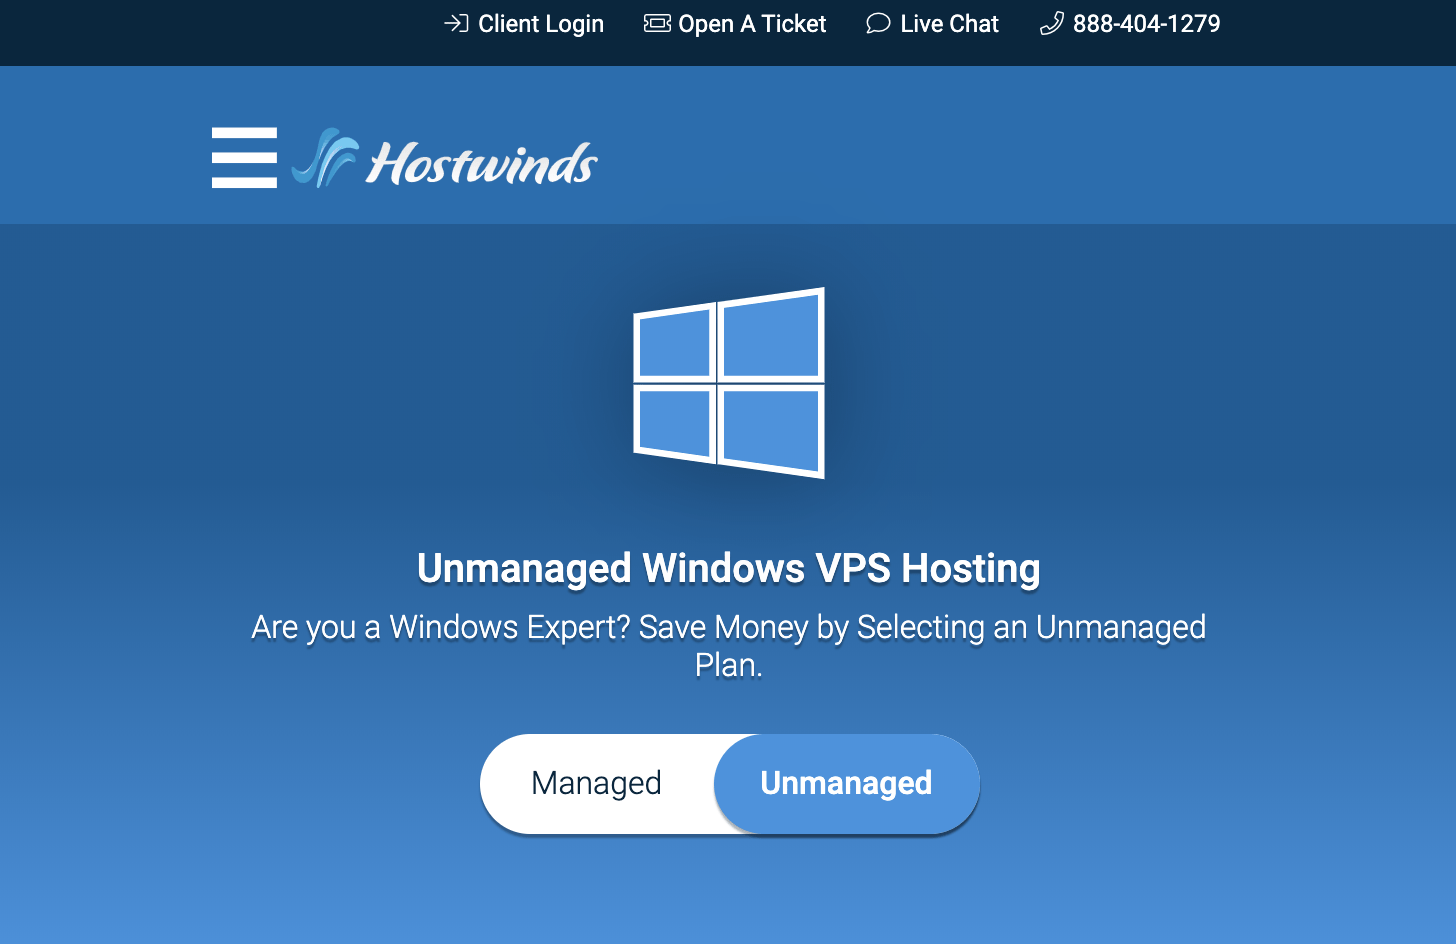 Hostwinds Unmanaged Windows VPS Hosting